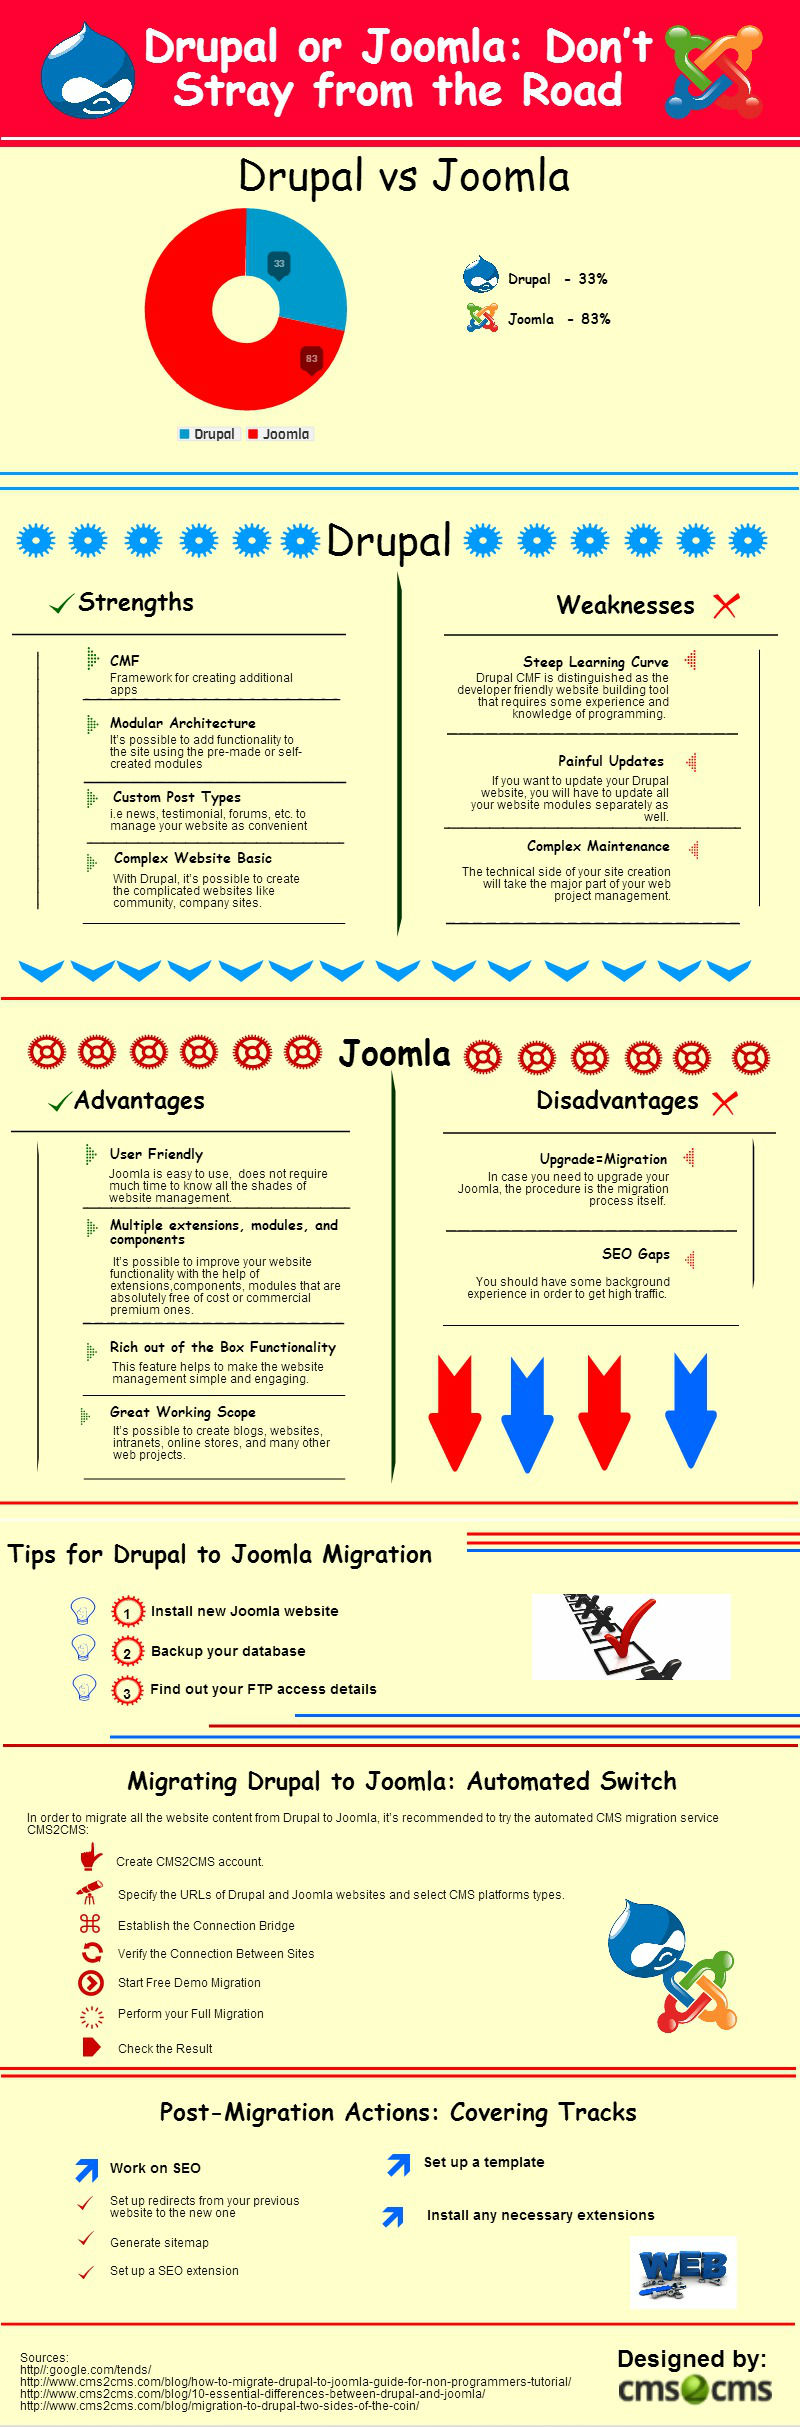 drupal-to-joomla-migration-chasing-website-sanctity_5209d2e5e2b44